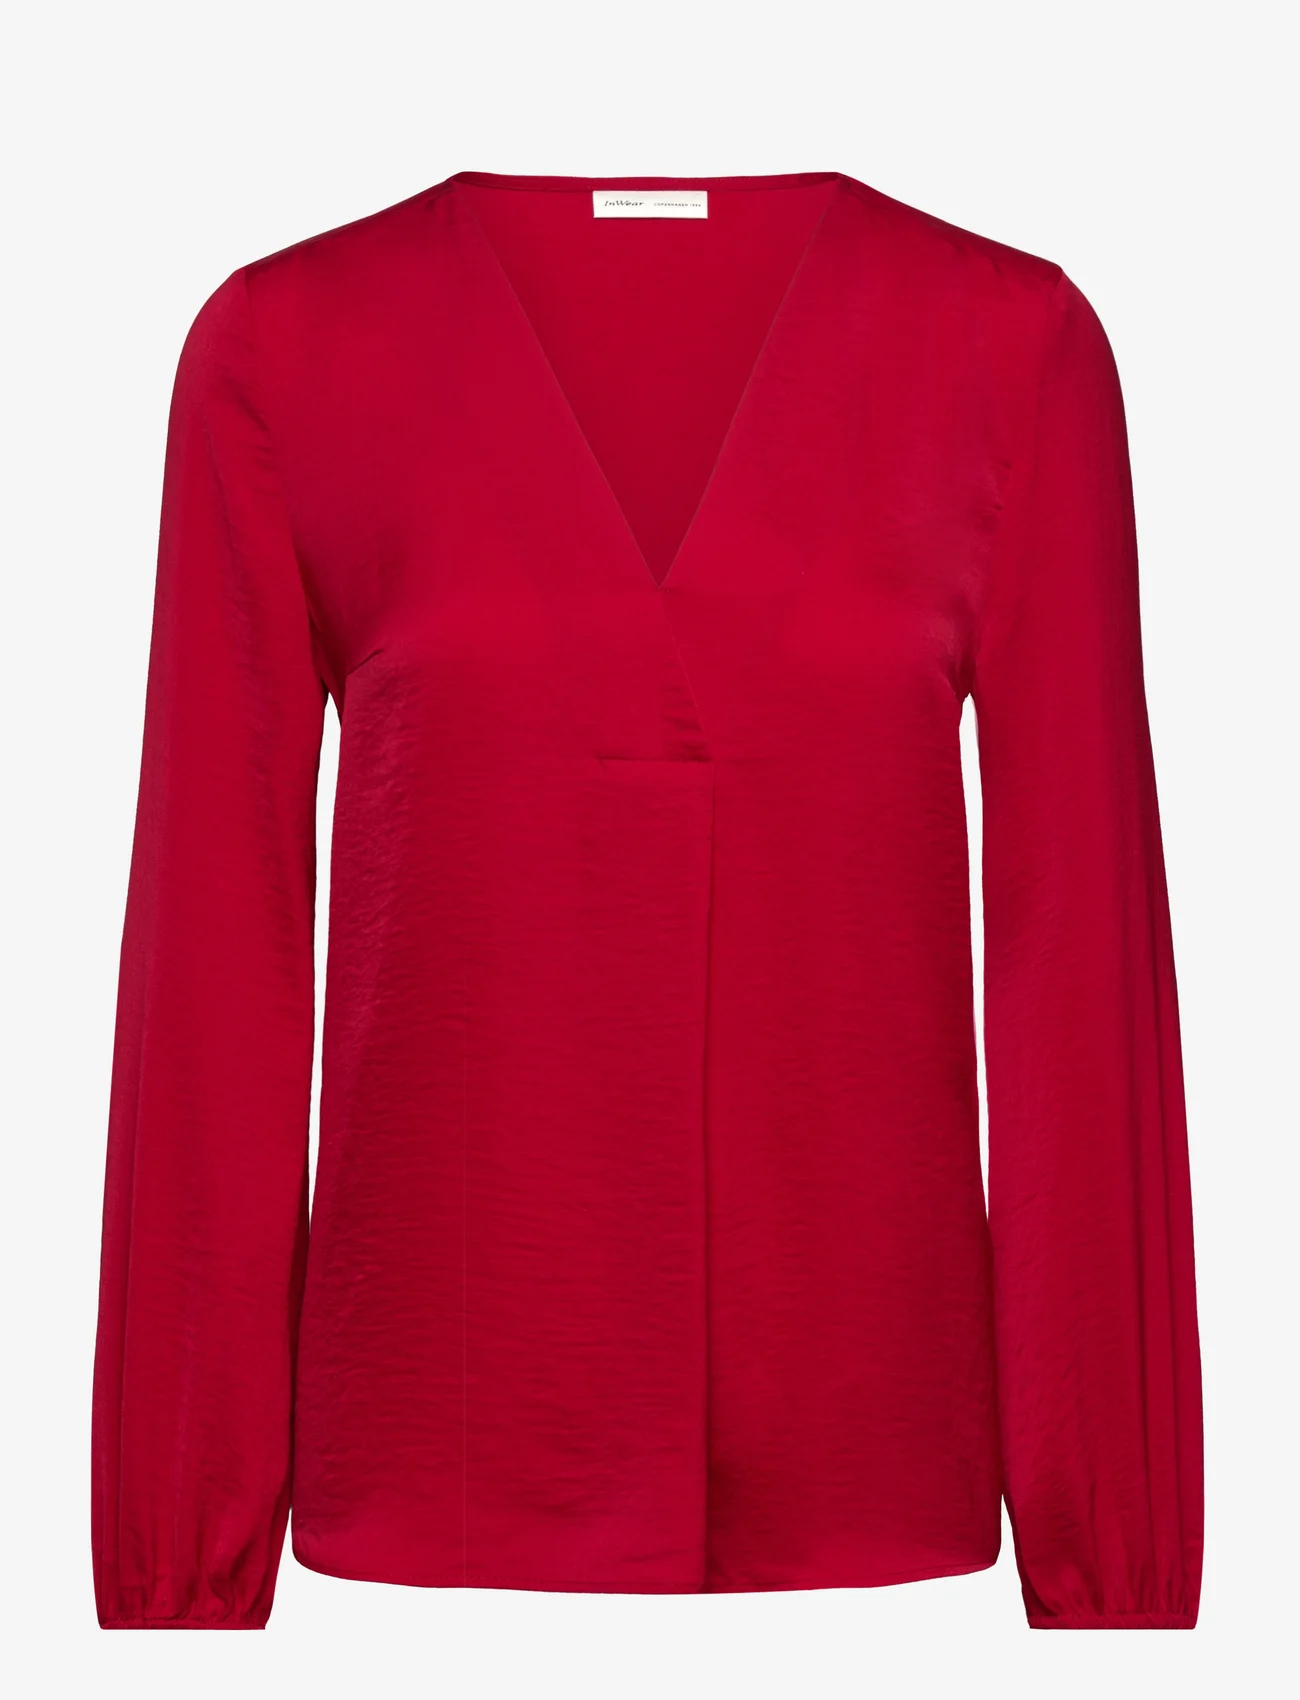 InWear - RindaIW Blouse - long-sleeved blouses - true red - 0